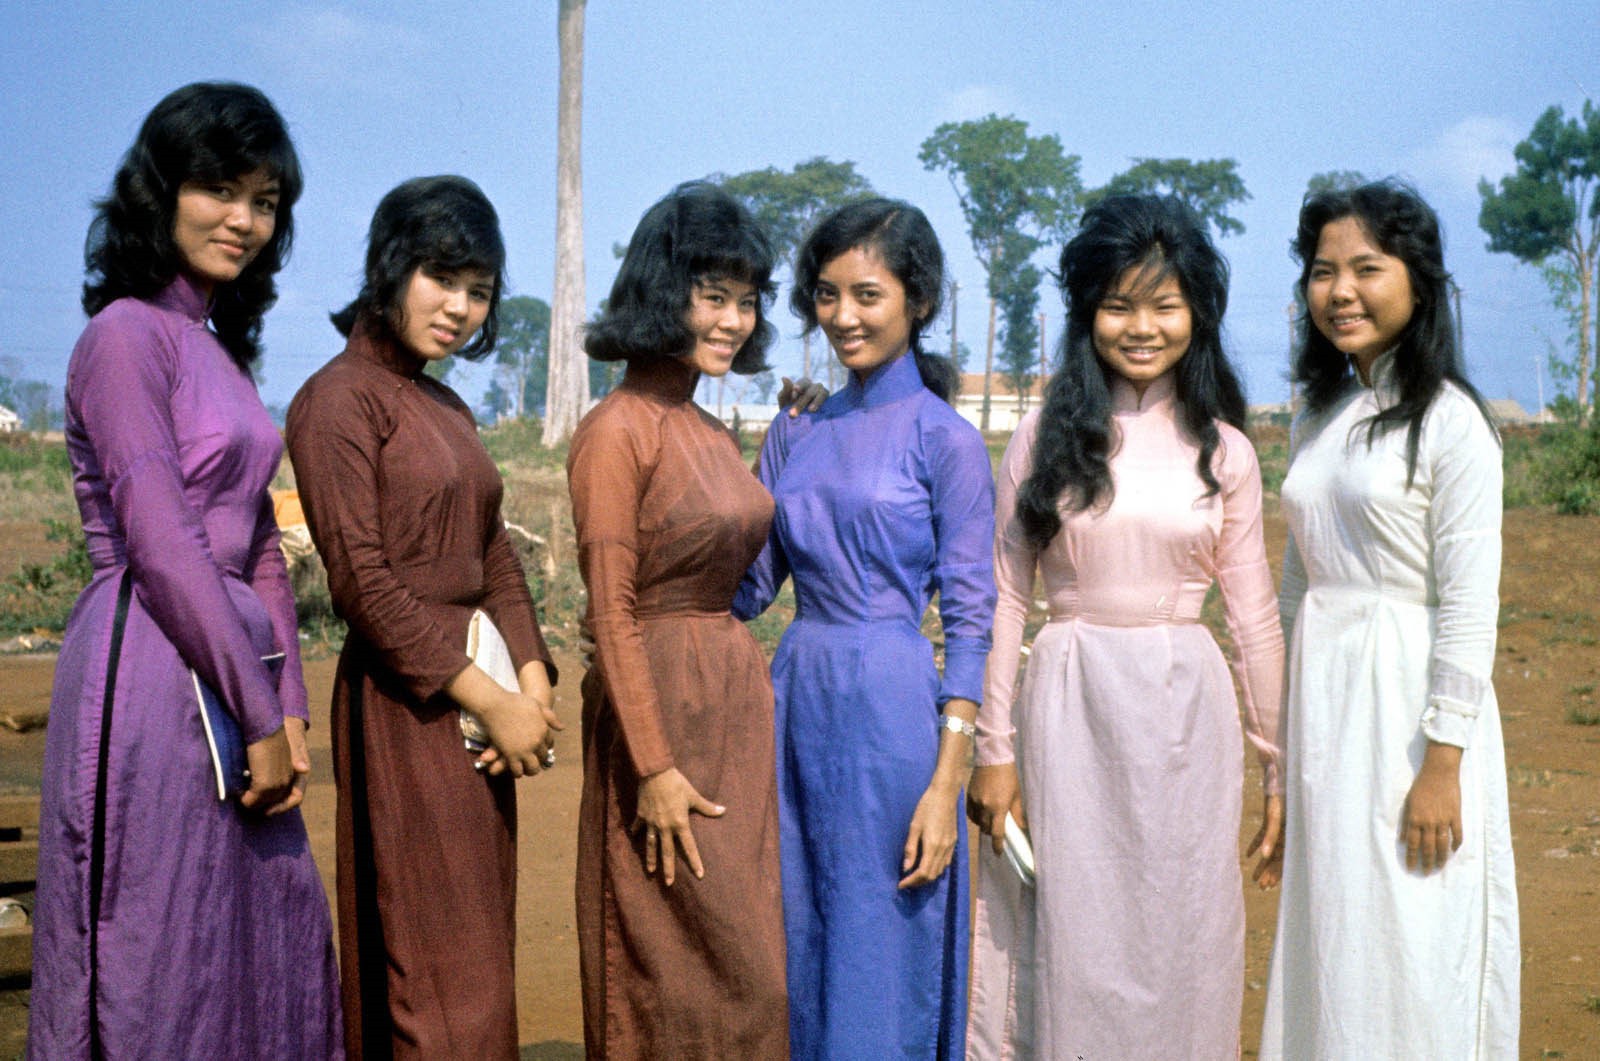 Chùm ảnh: Bình Phước năm 1963 qua ống kính người Mỹ